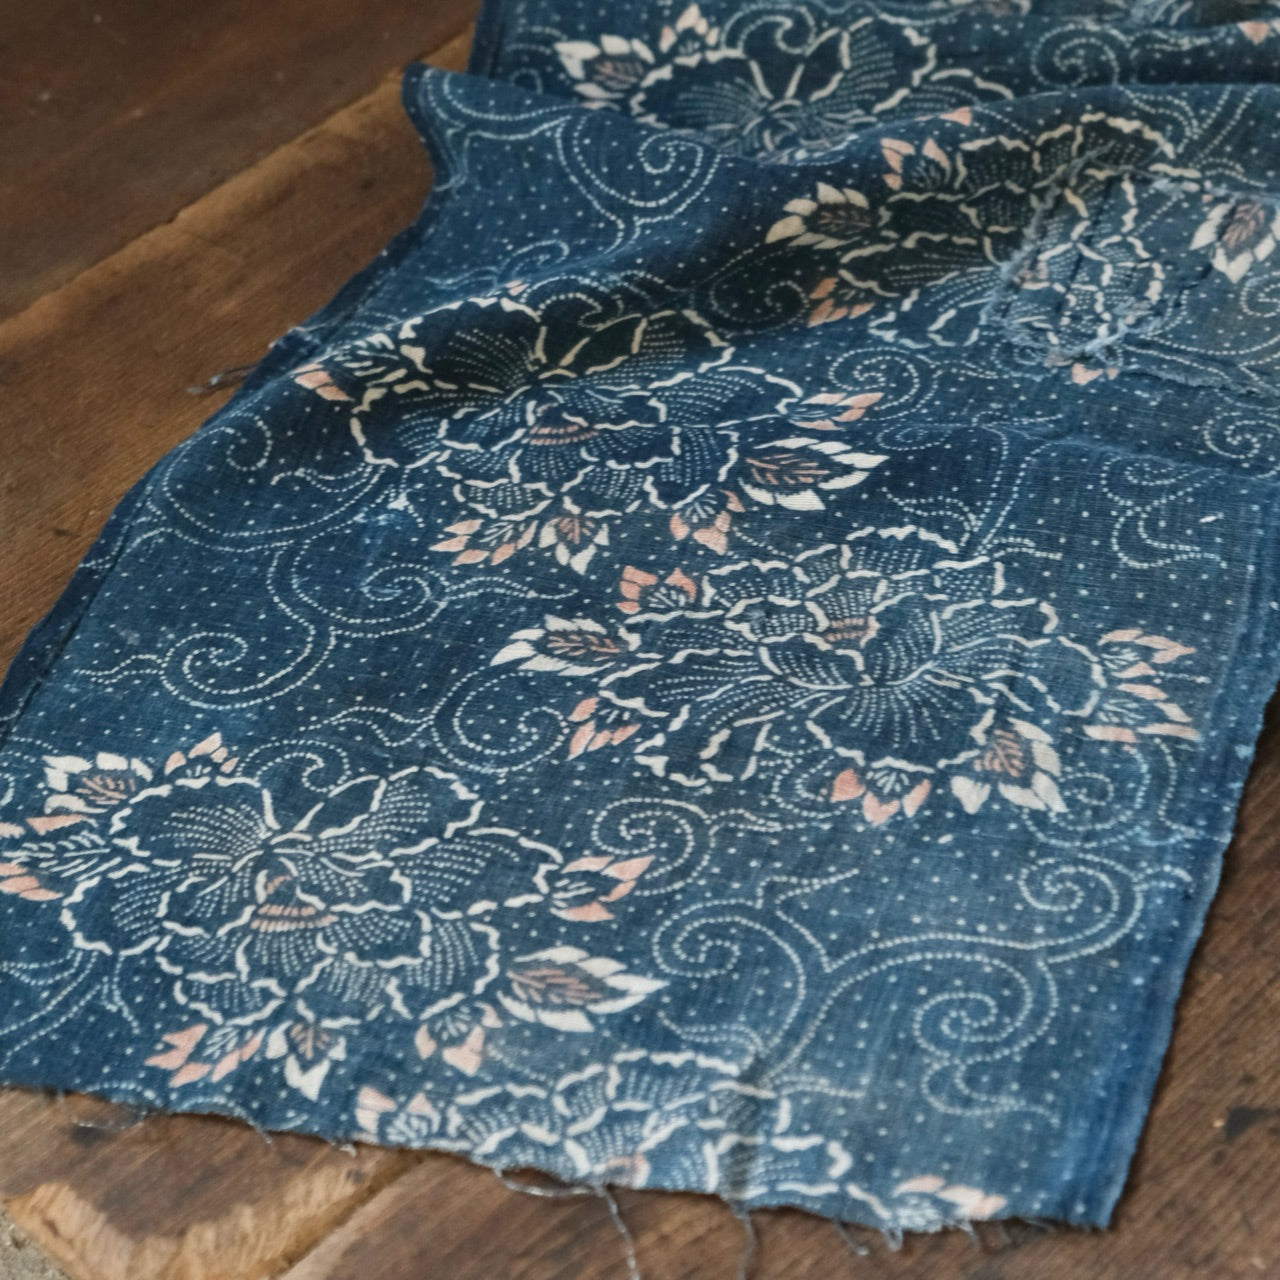 Vintage Japanese Boro Peony Flower Pattern Indigo-dyed Katazome textile